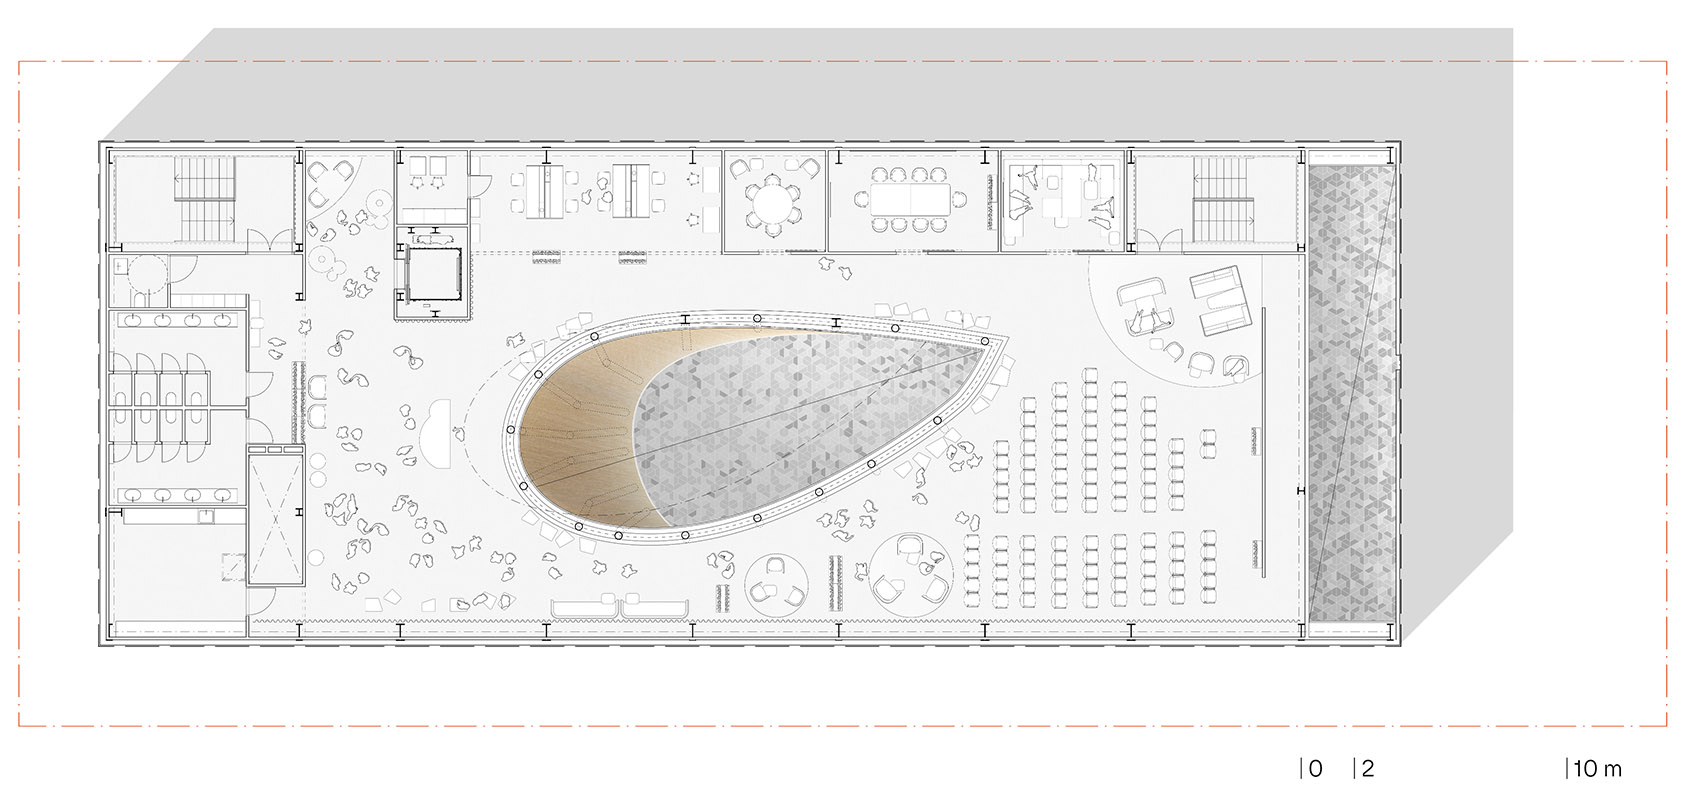 2020迪拜世博会芬兰馆/覆盖在沙漠上的白色积雪-78